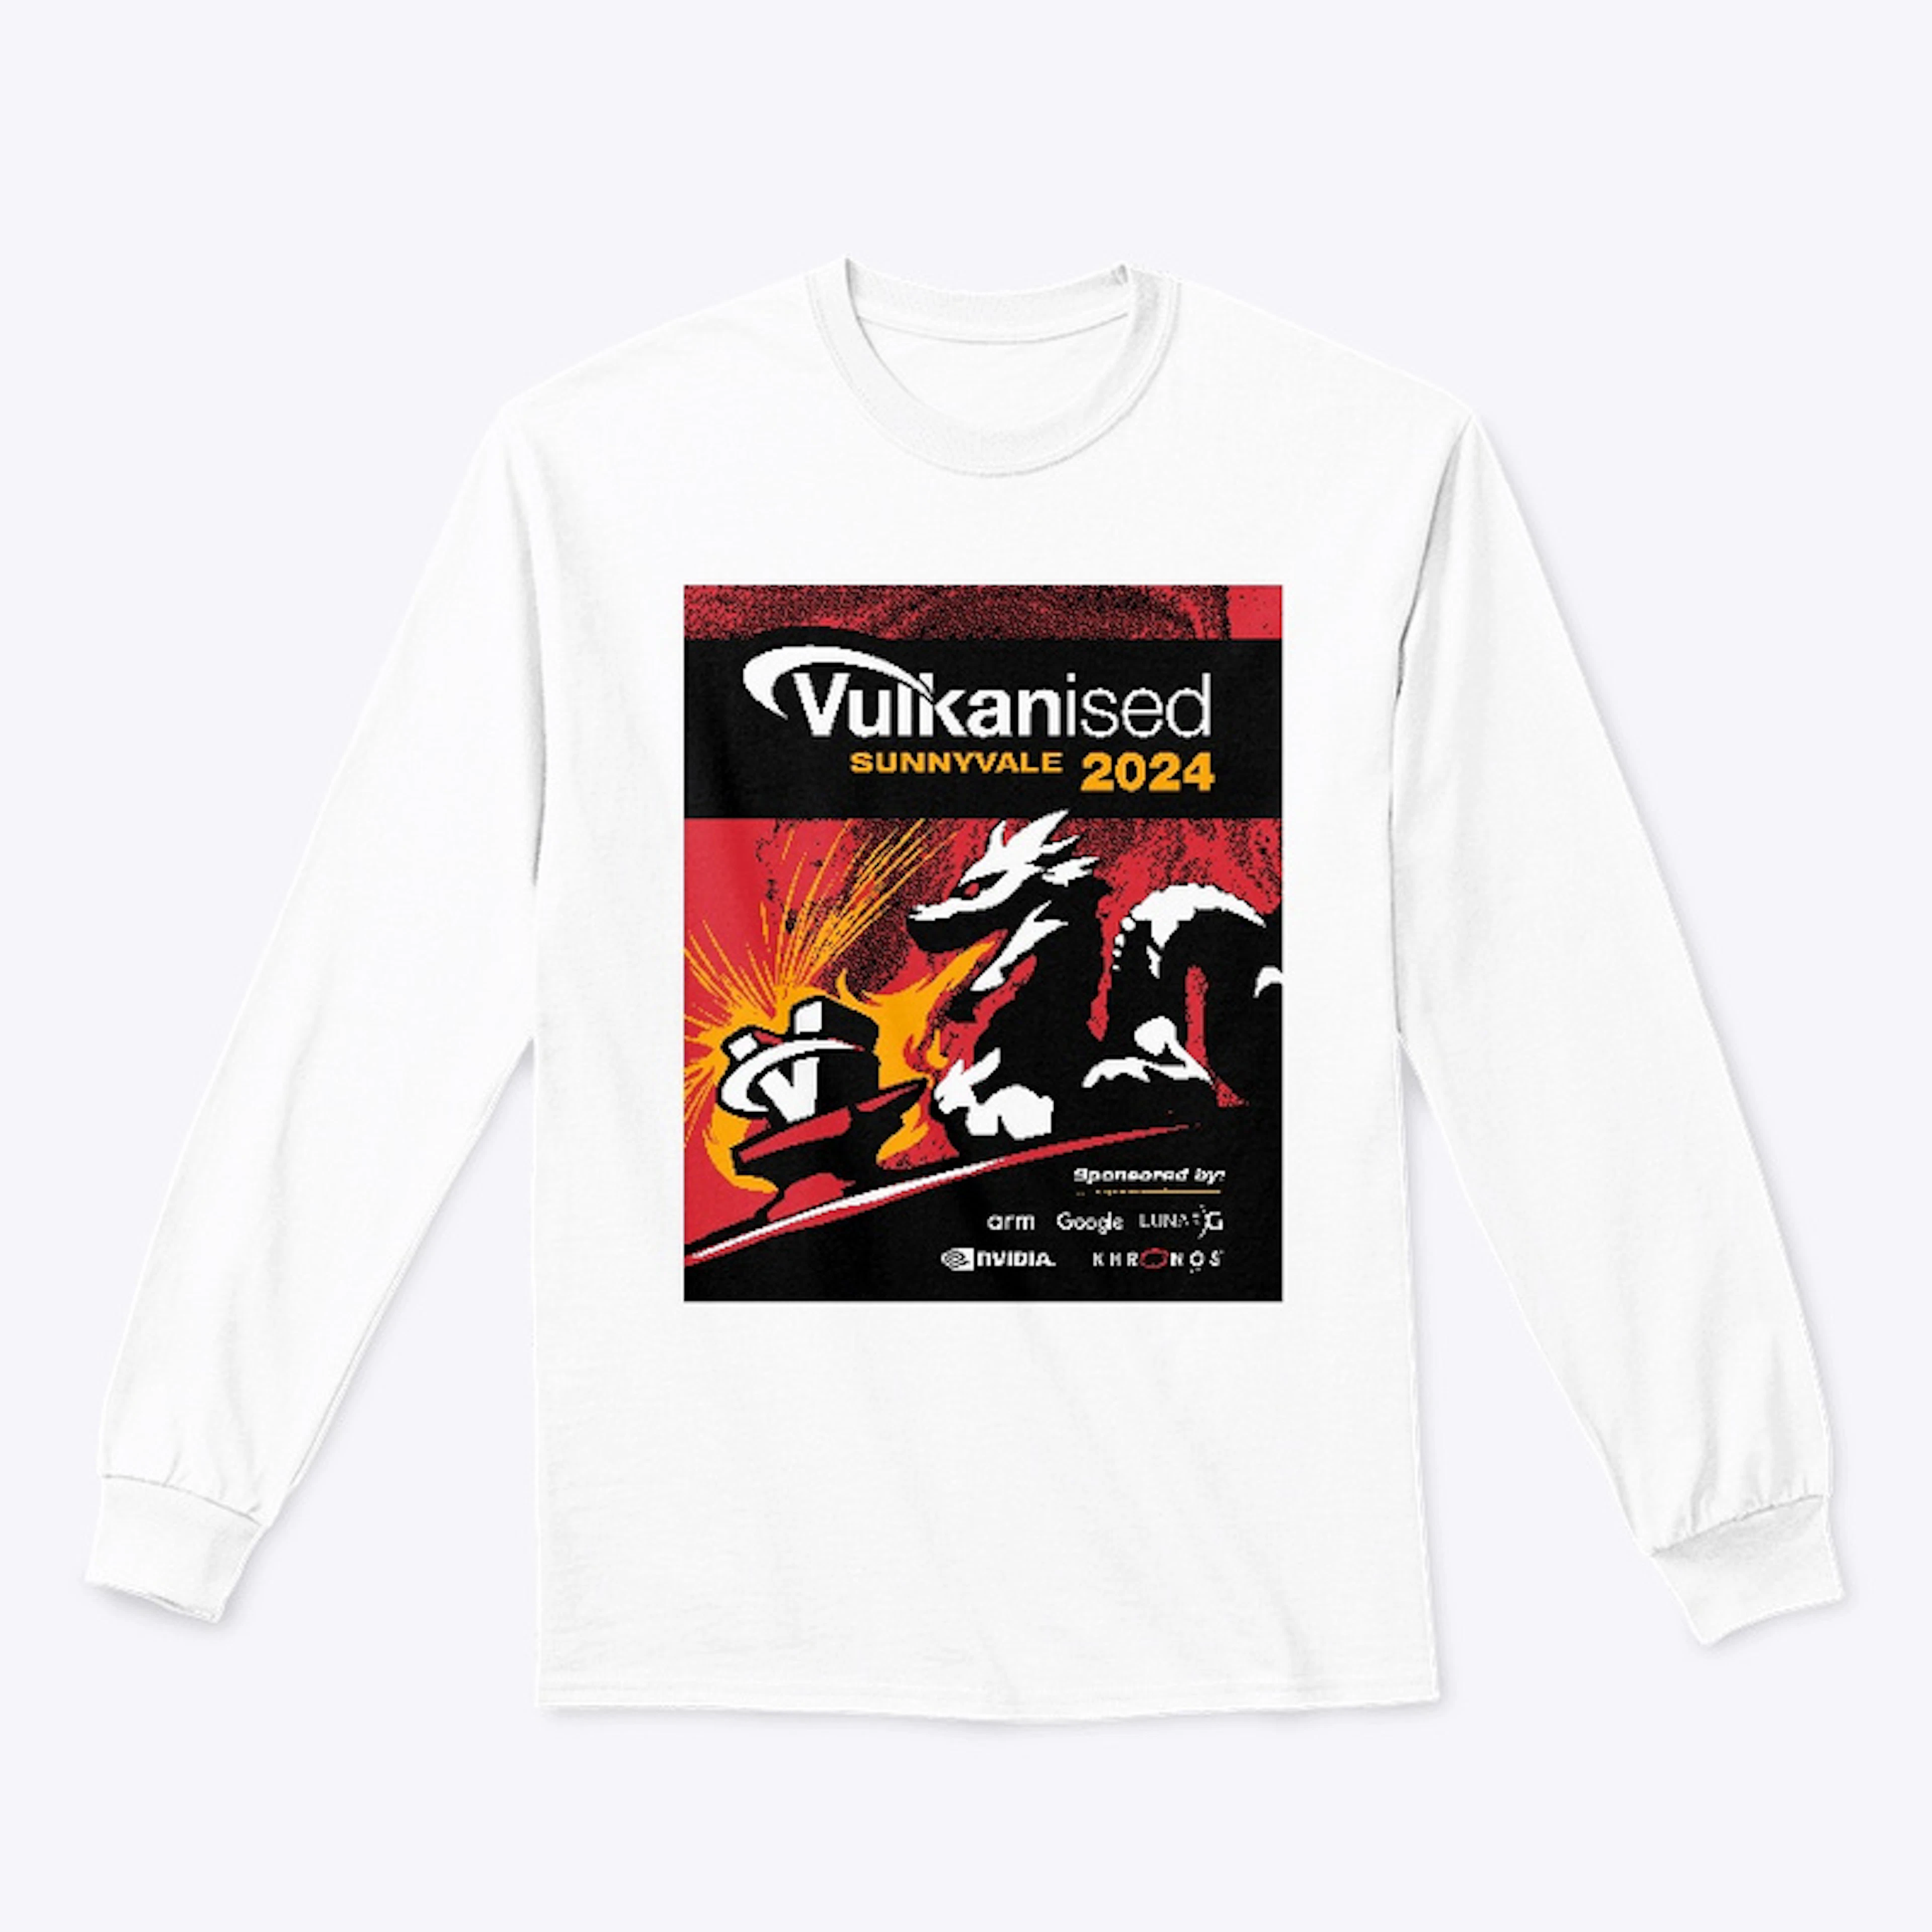 Vulkanised 2024 - White Shirt